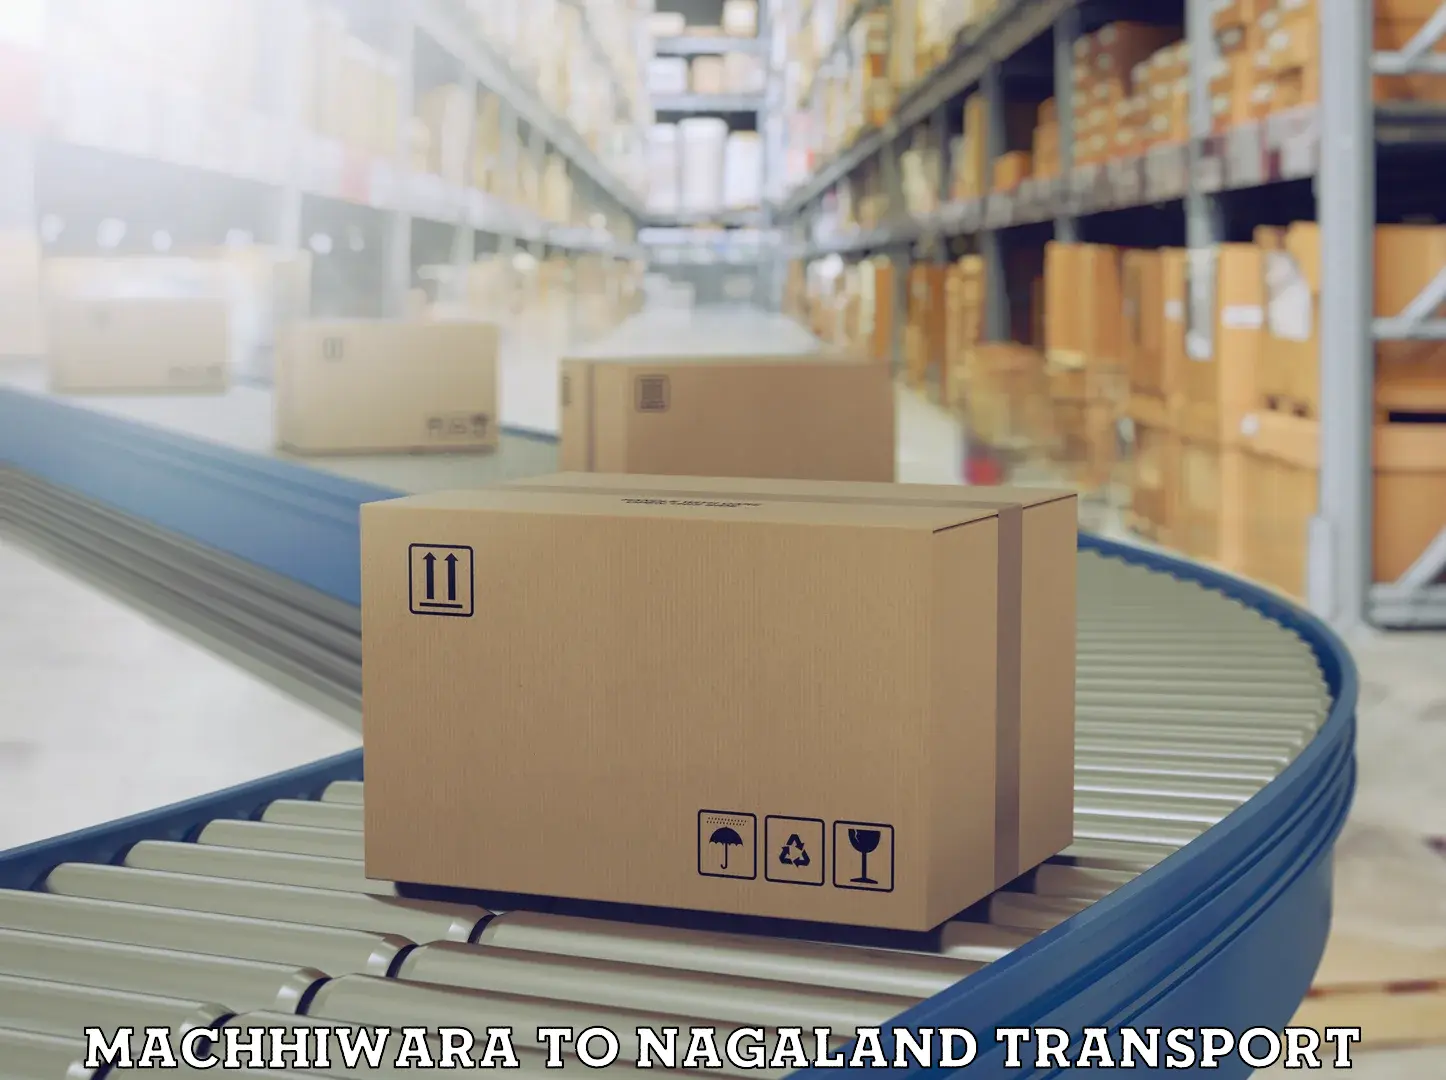 Shipping partner Machhiwara to NIT Nagaland